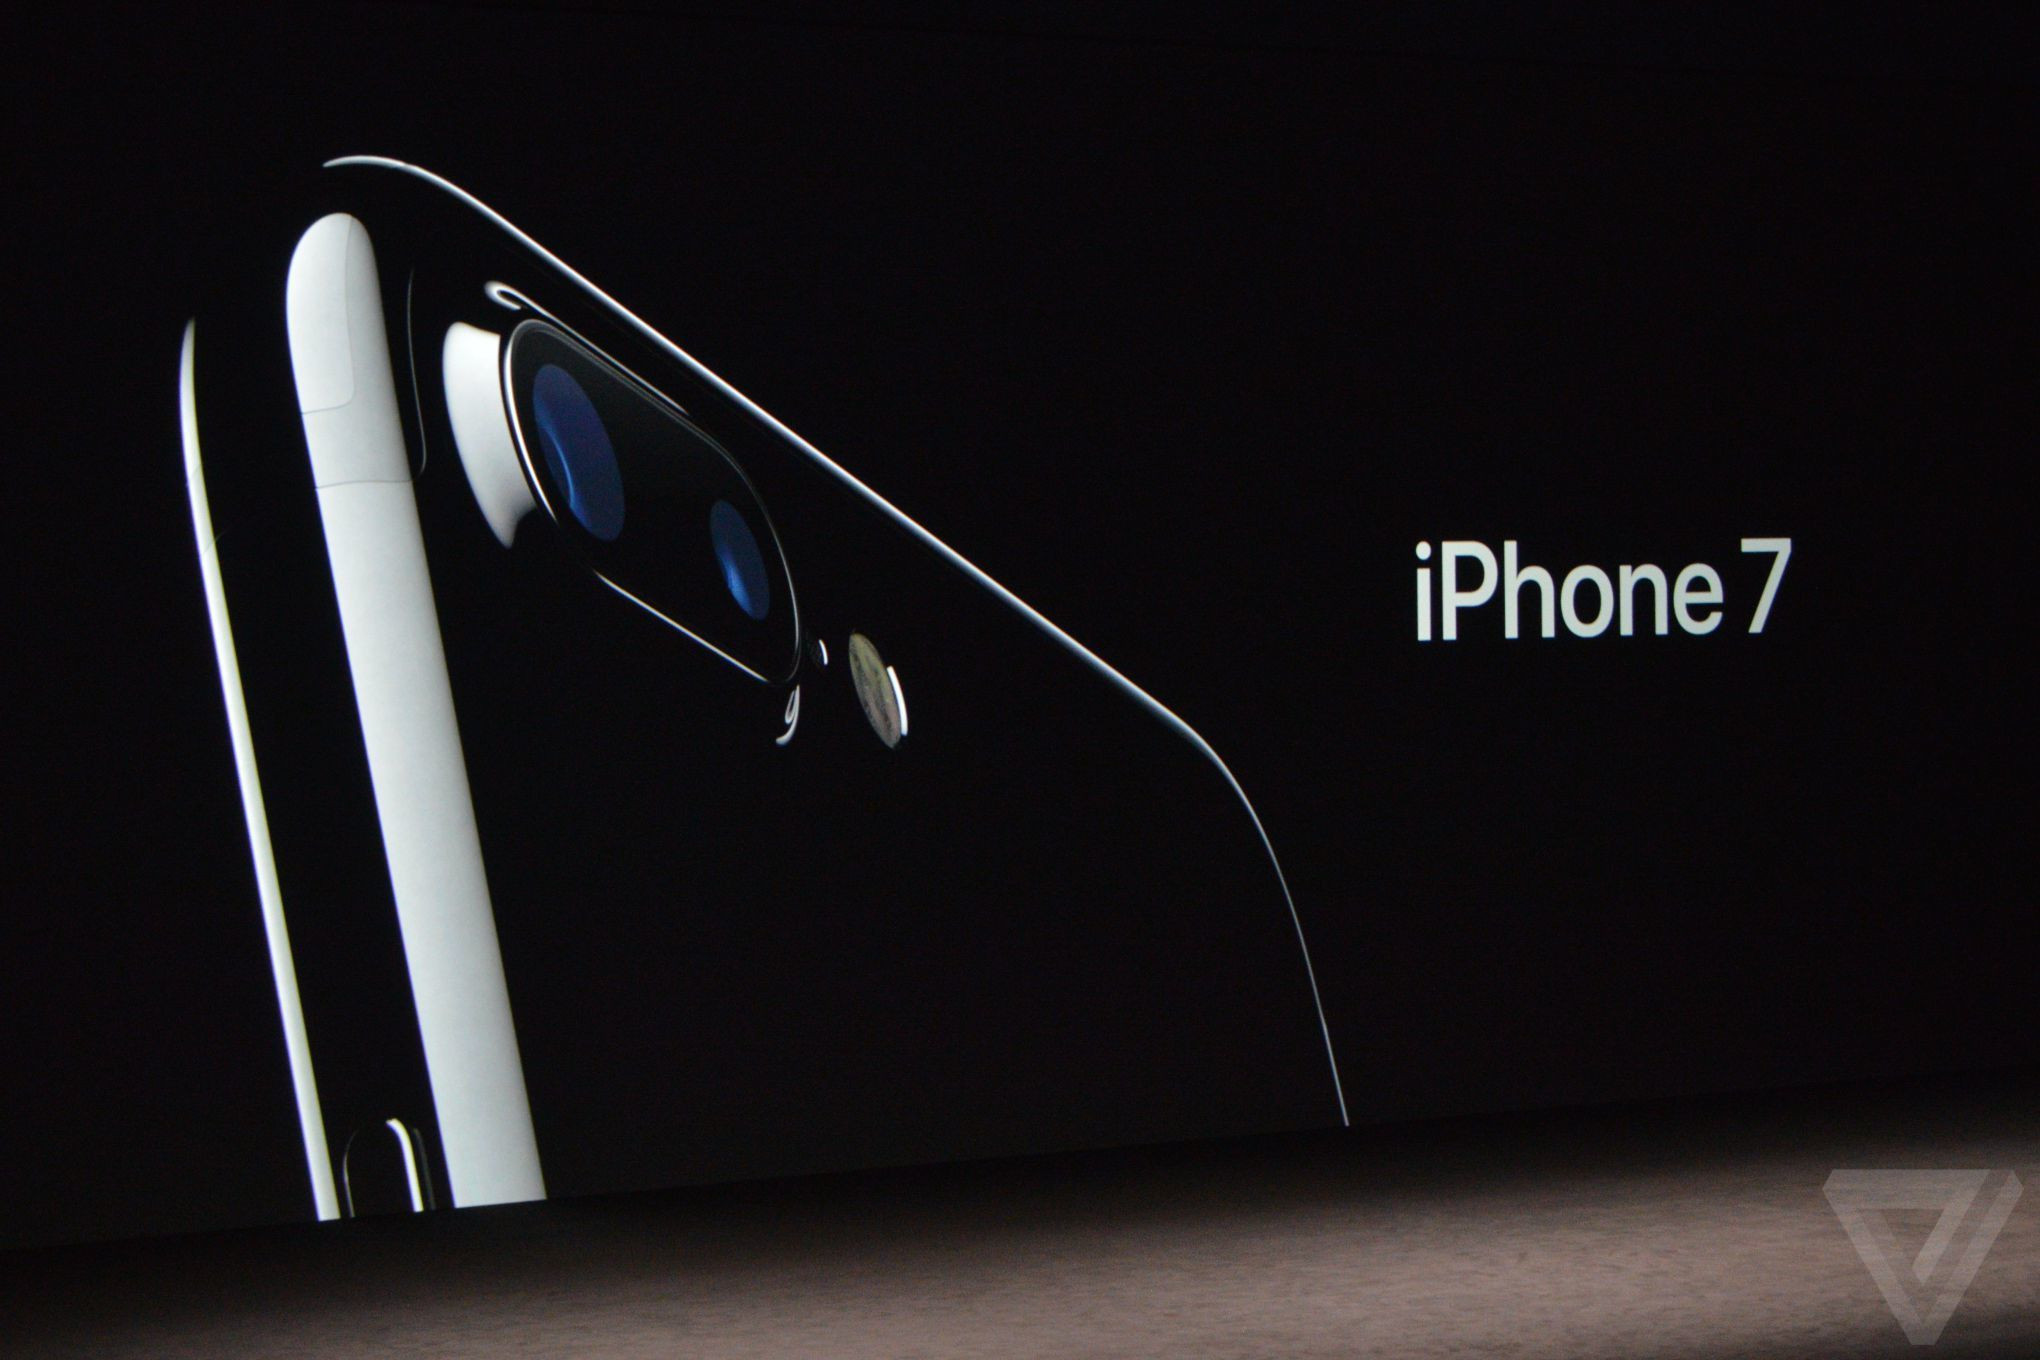  iPhone 7 Plus được ra mắt vào ngày 16/9/2016